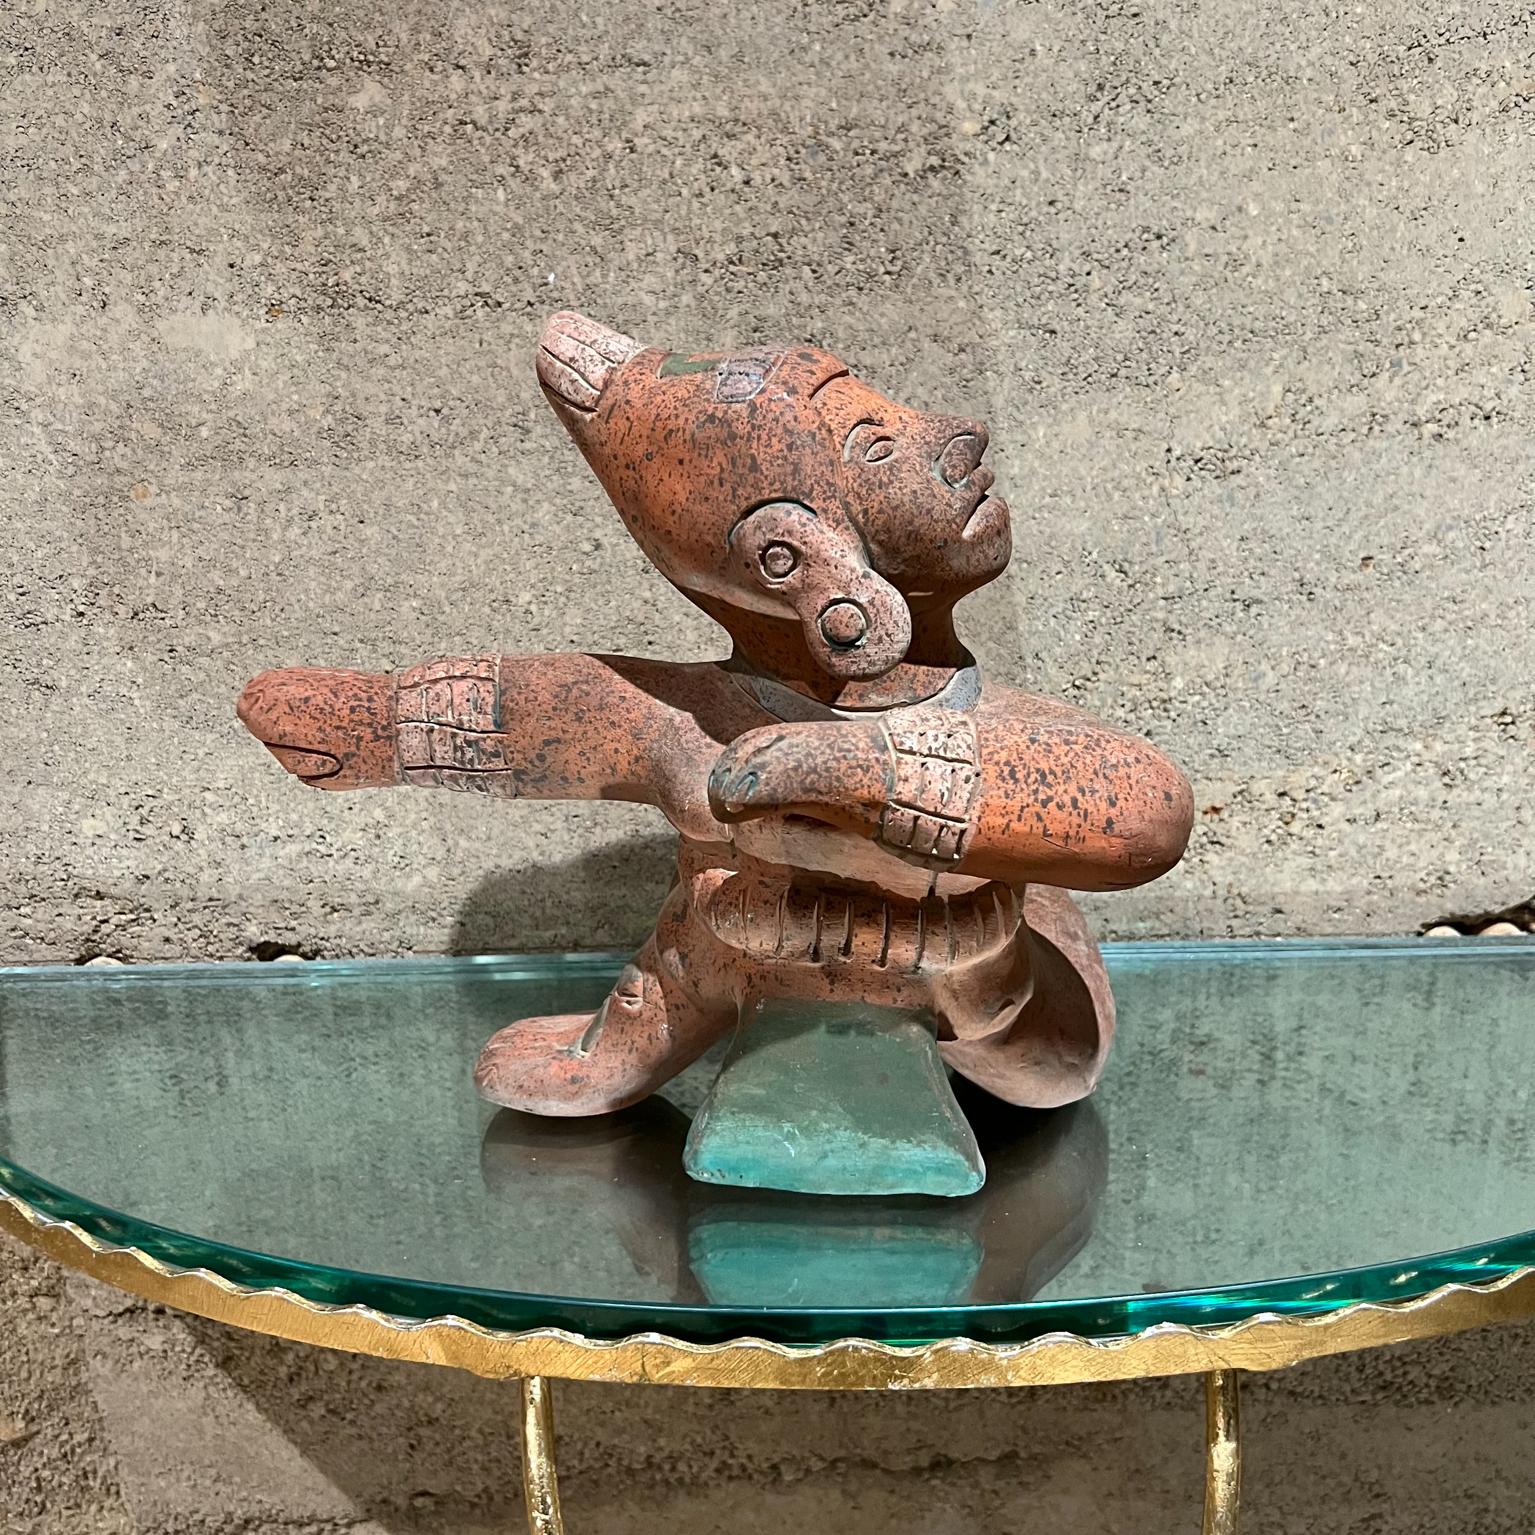 Vintage Native Artwork Mex Indian Intricate Handcrafted Pottery Sculpture
Beau travail artisanal.
10,25 de haut x 12 de large x 8 de profondeur
Très bon état.
Veuillez vous référer aux images fournies
